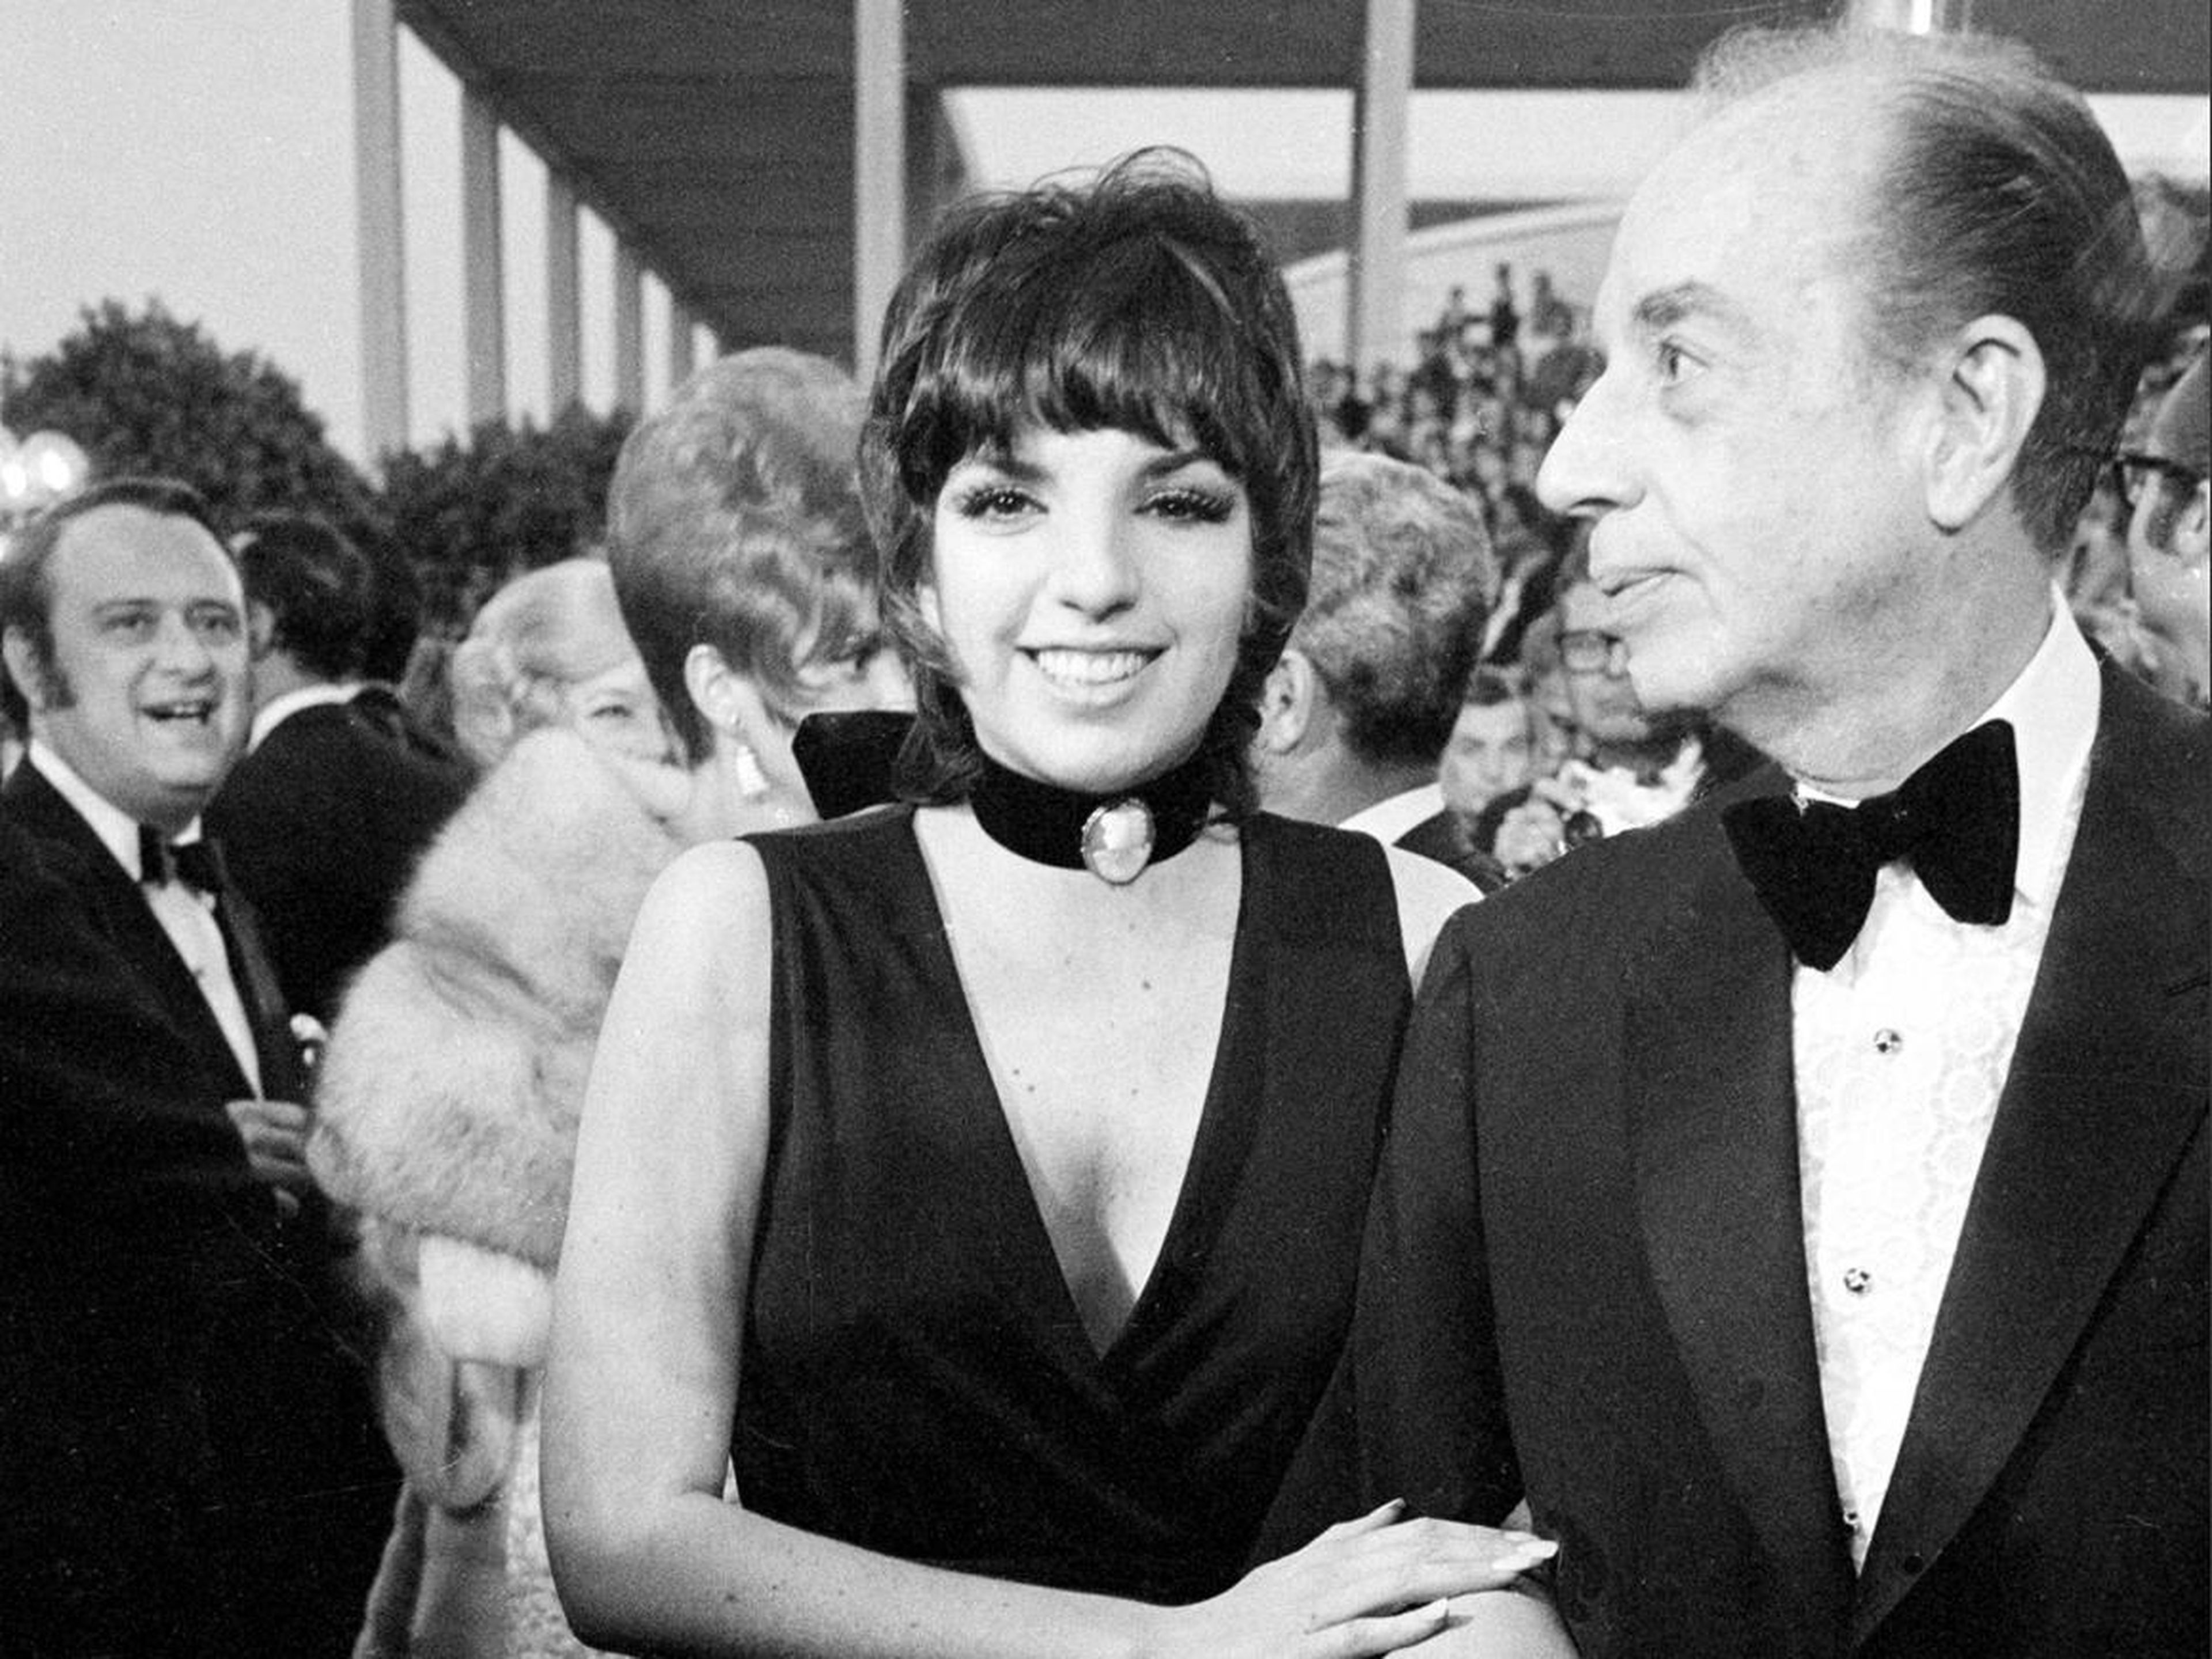 Liza and father Vincente Minnelli.